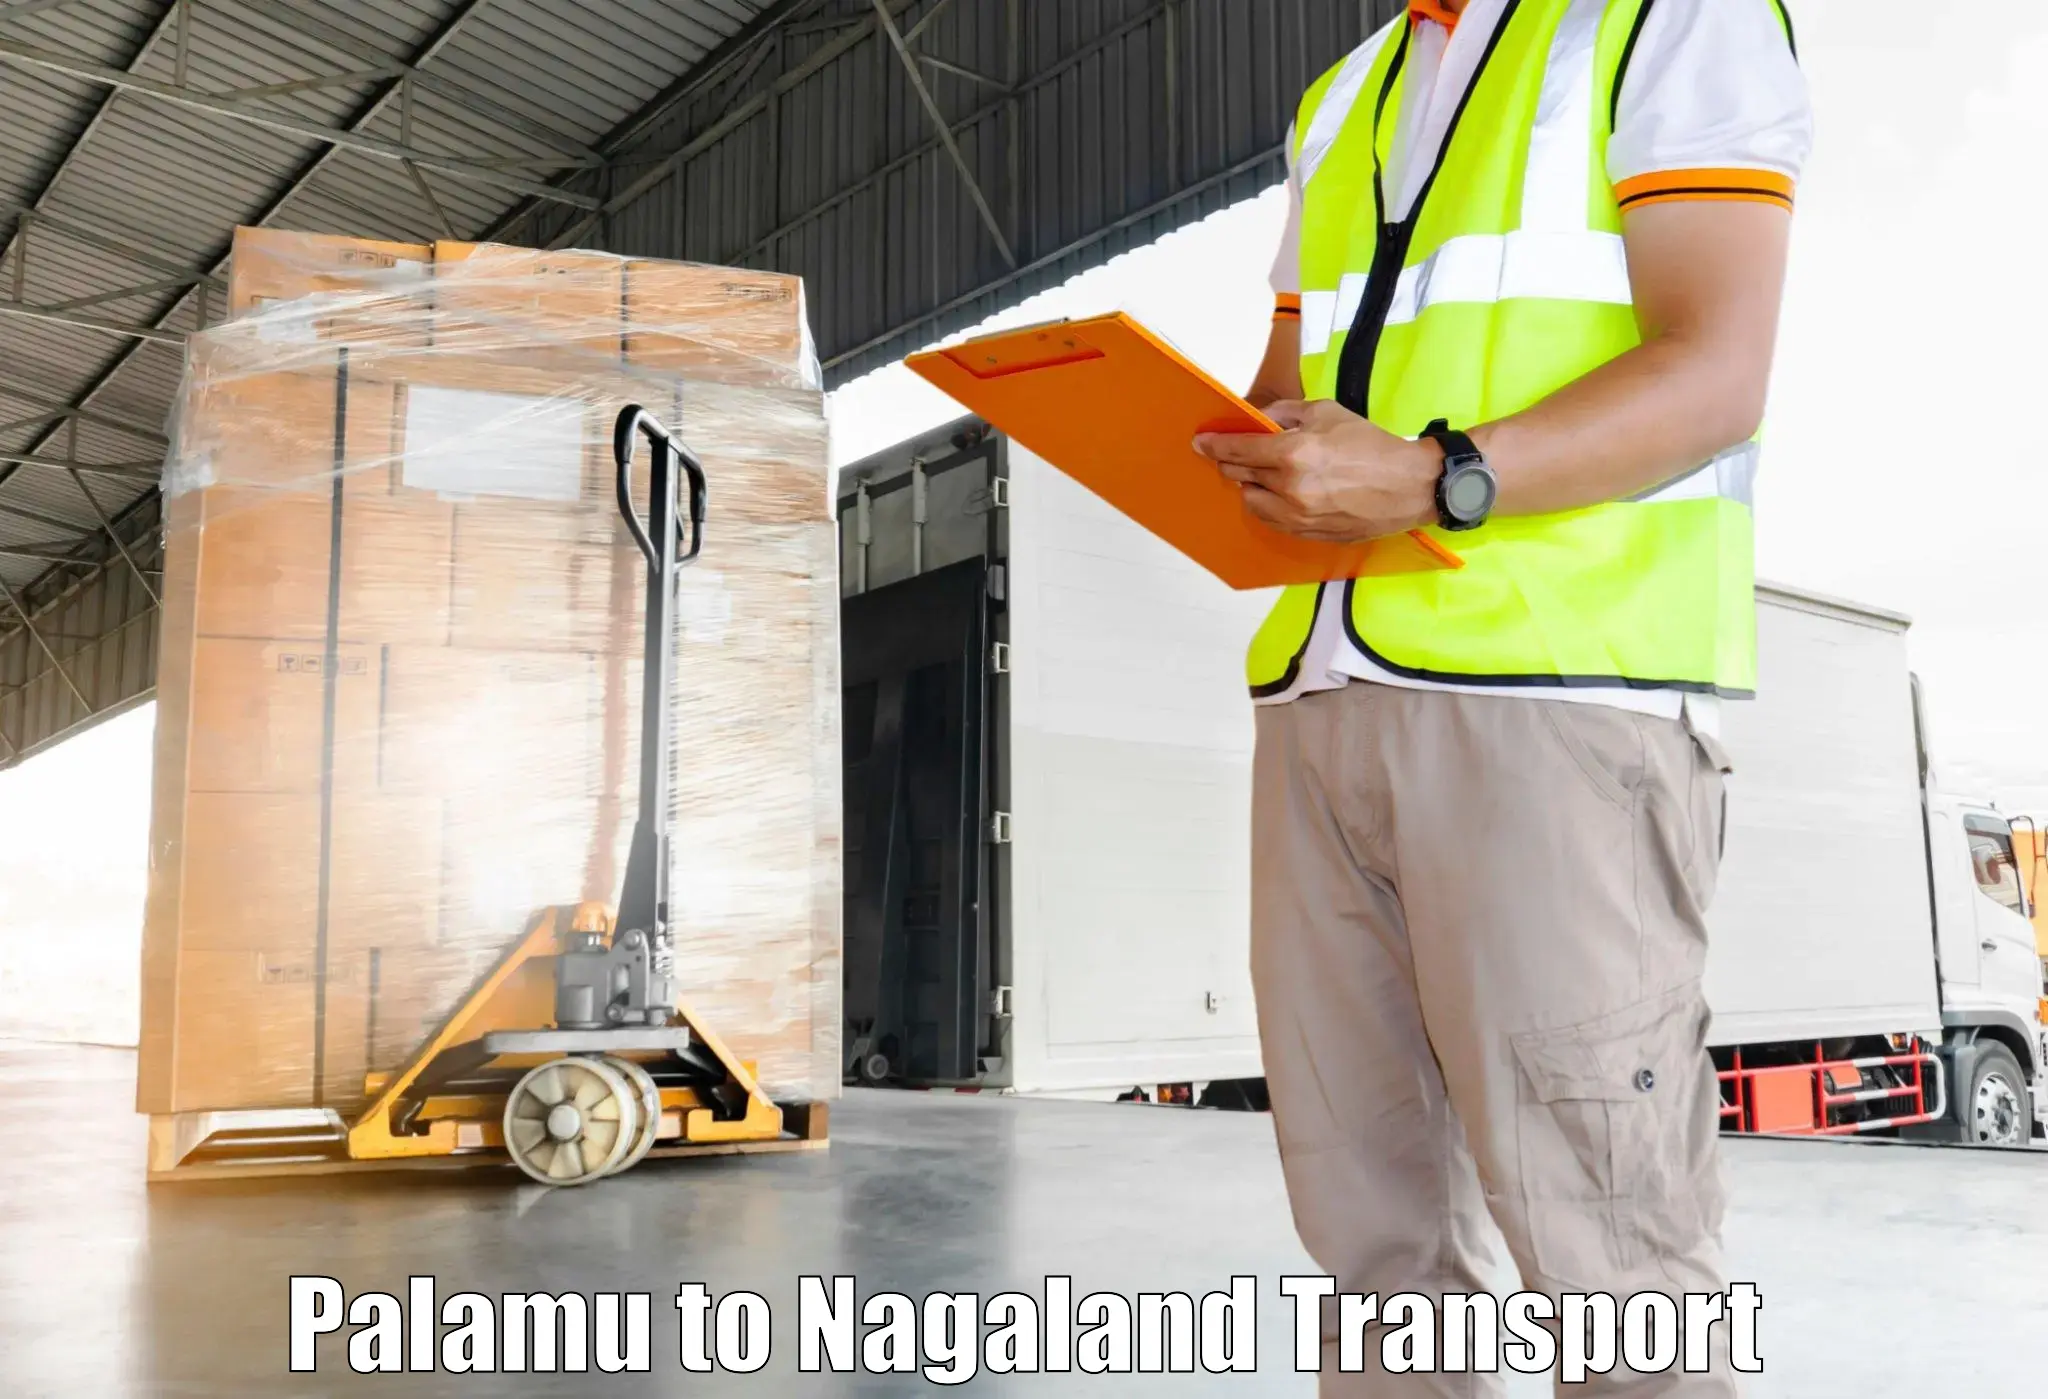 Nationwide transport services Palamu to Mokokchung